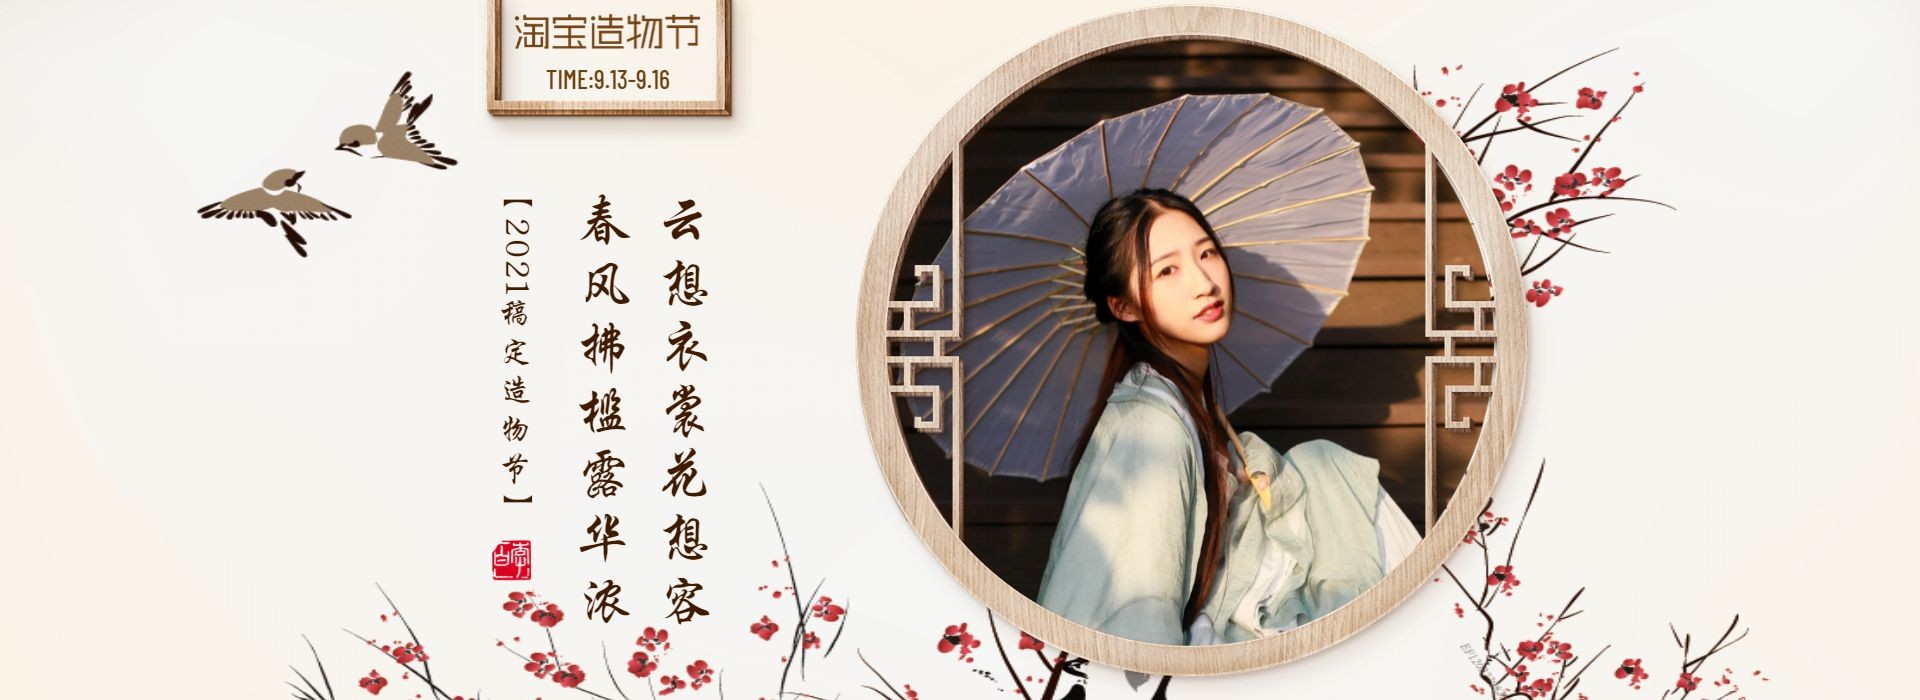 淘宝造物节中国风女装海报预览效果